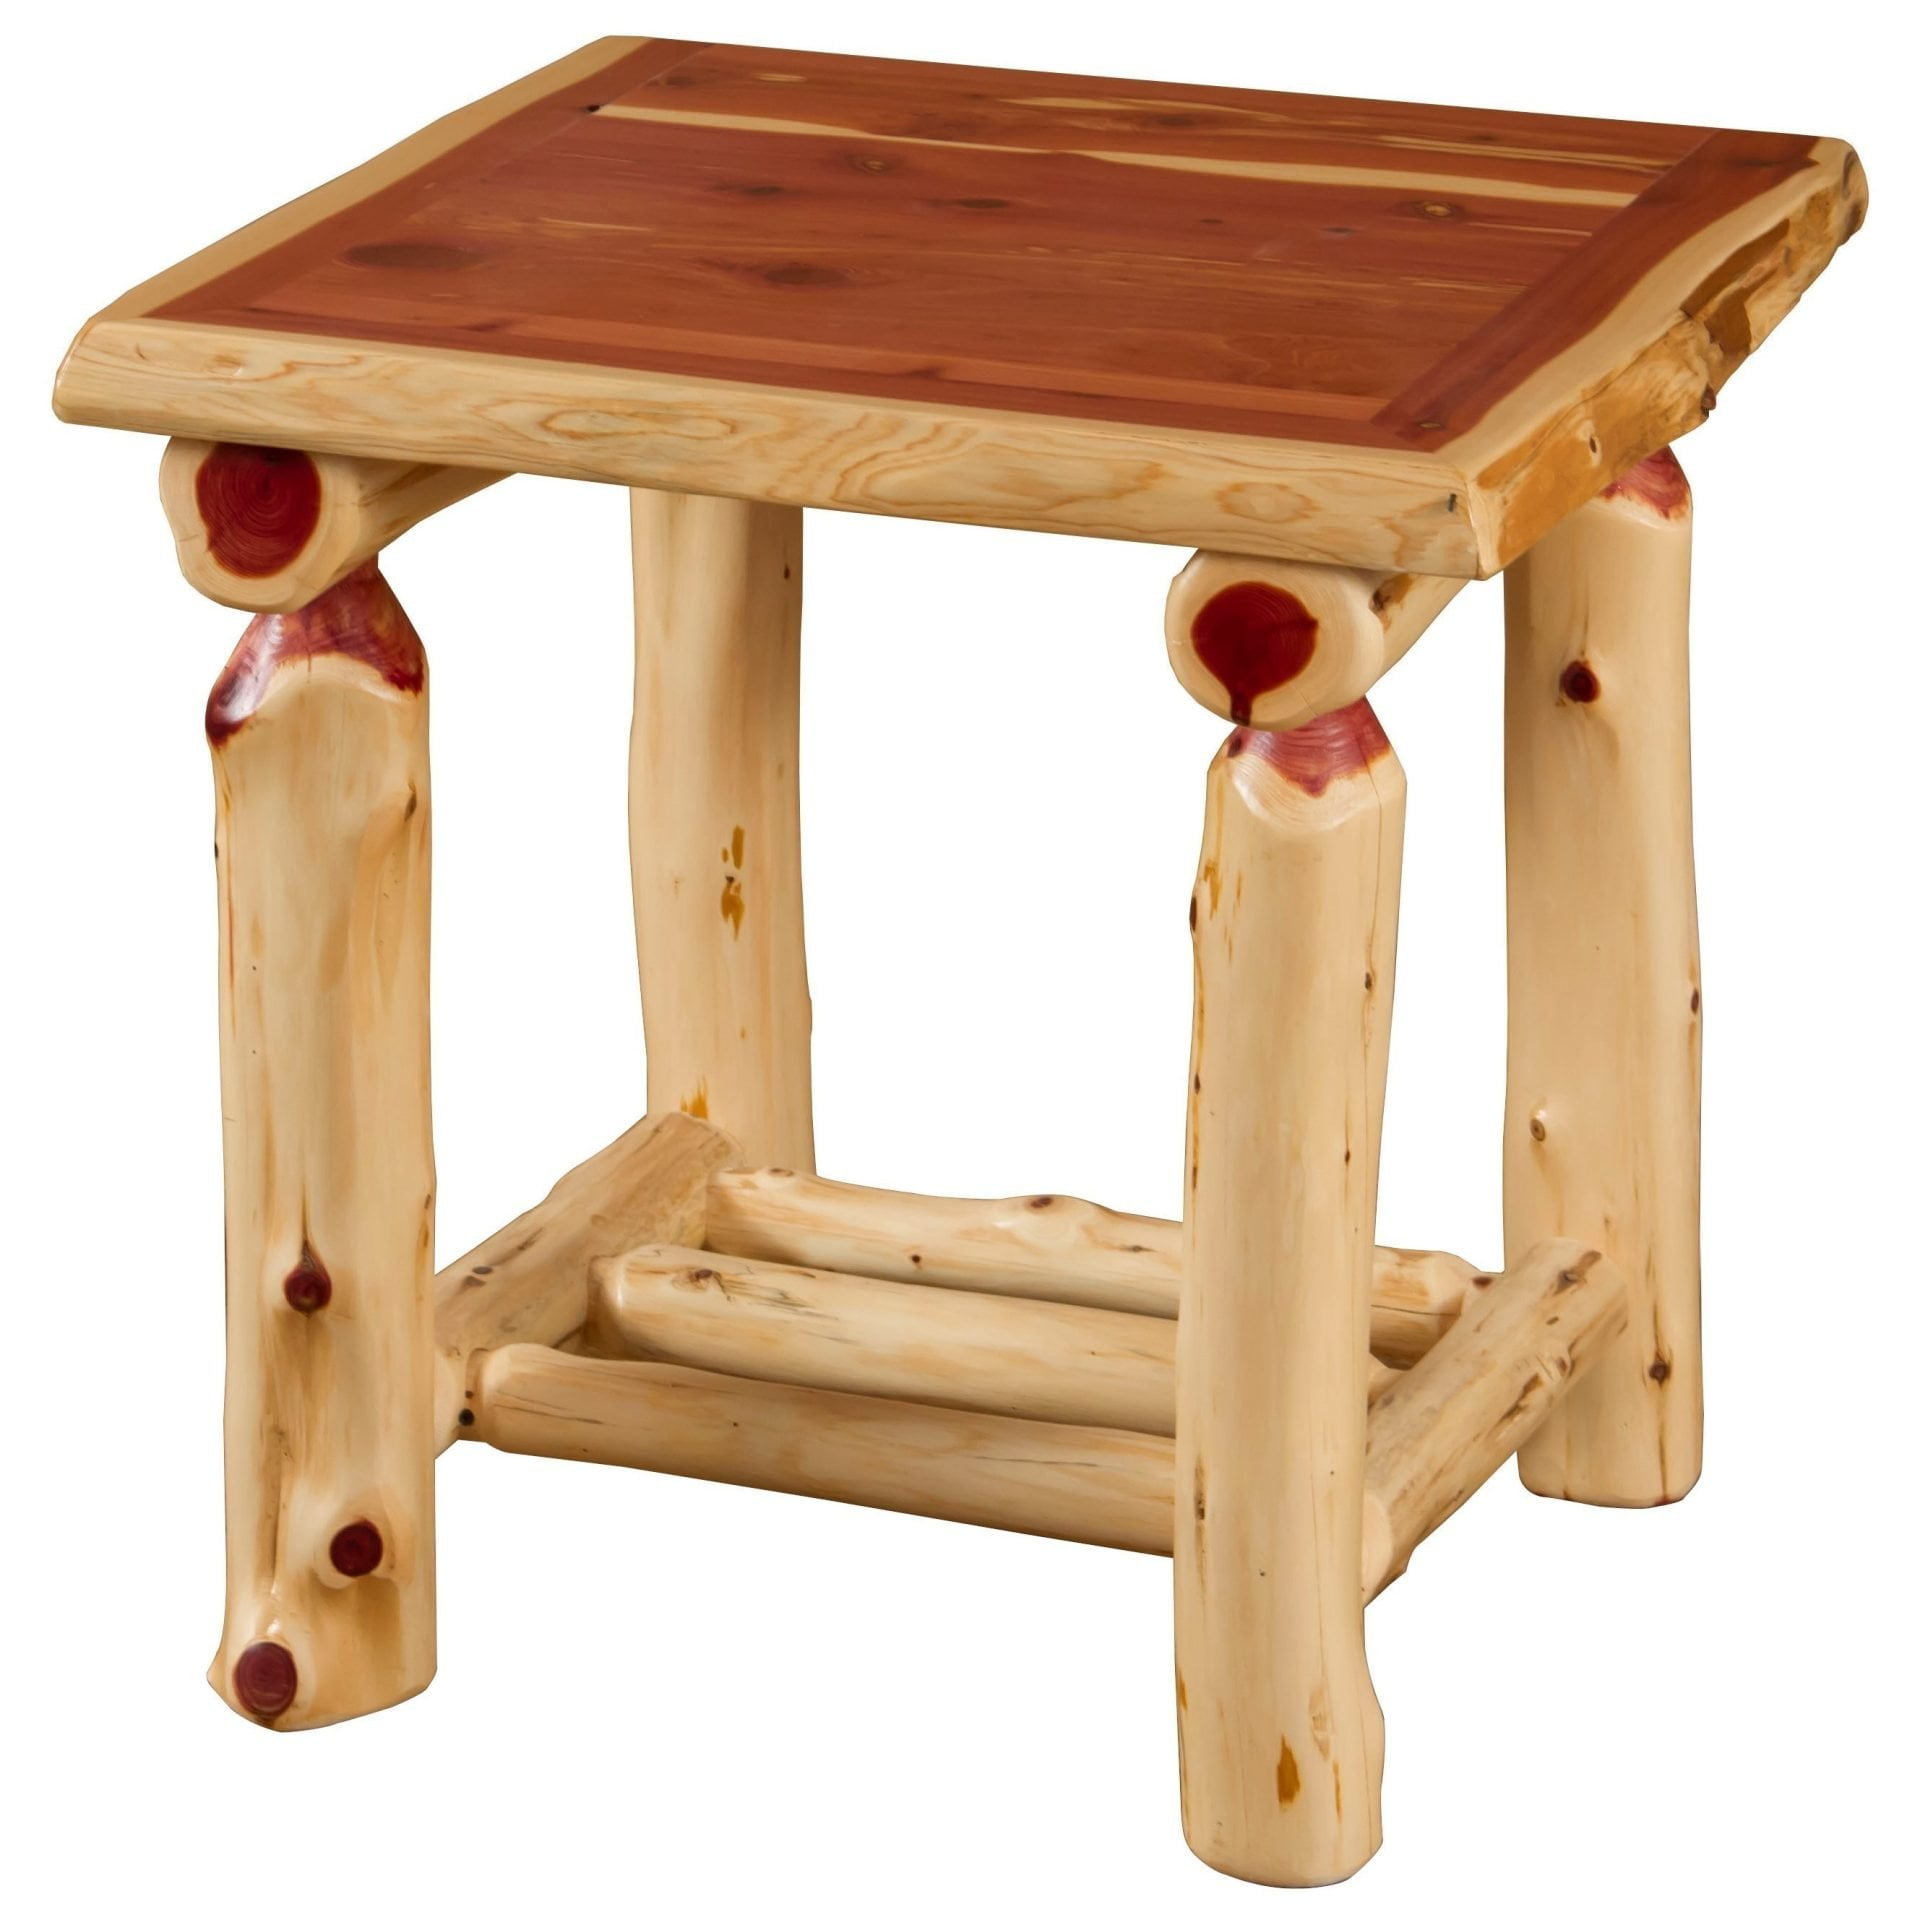 Rustic Red Cedar Log End Table